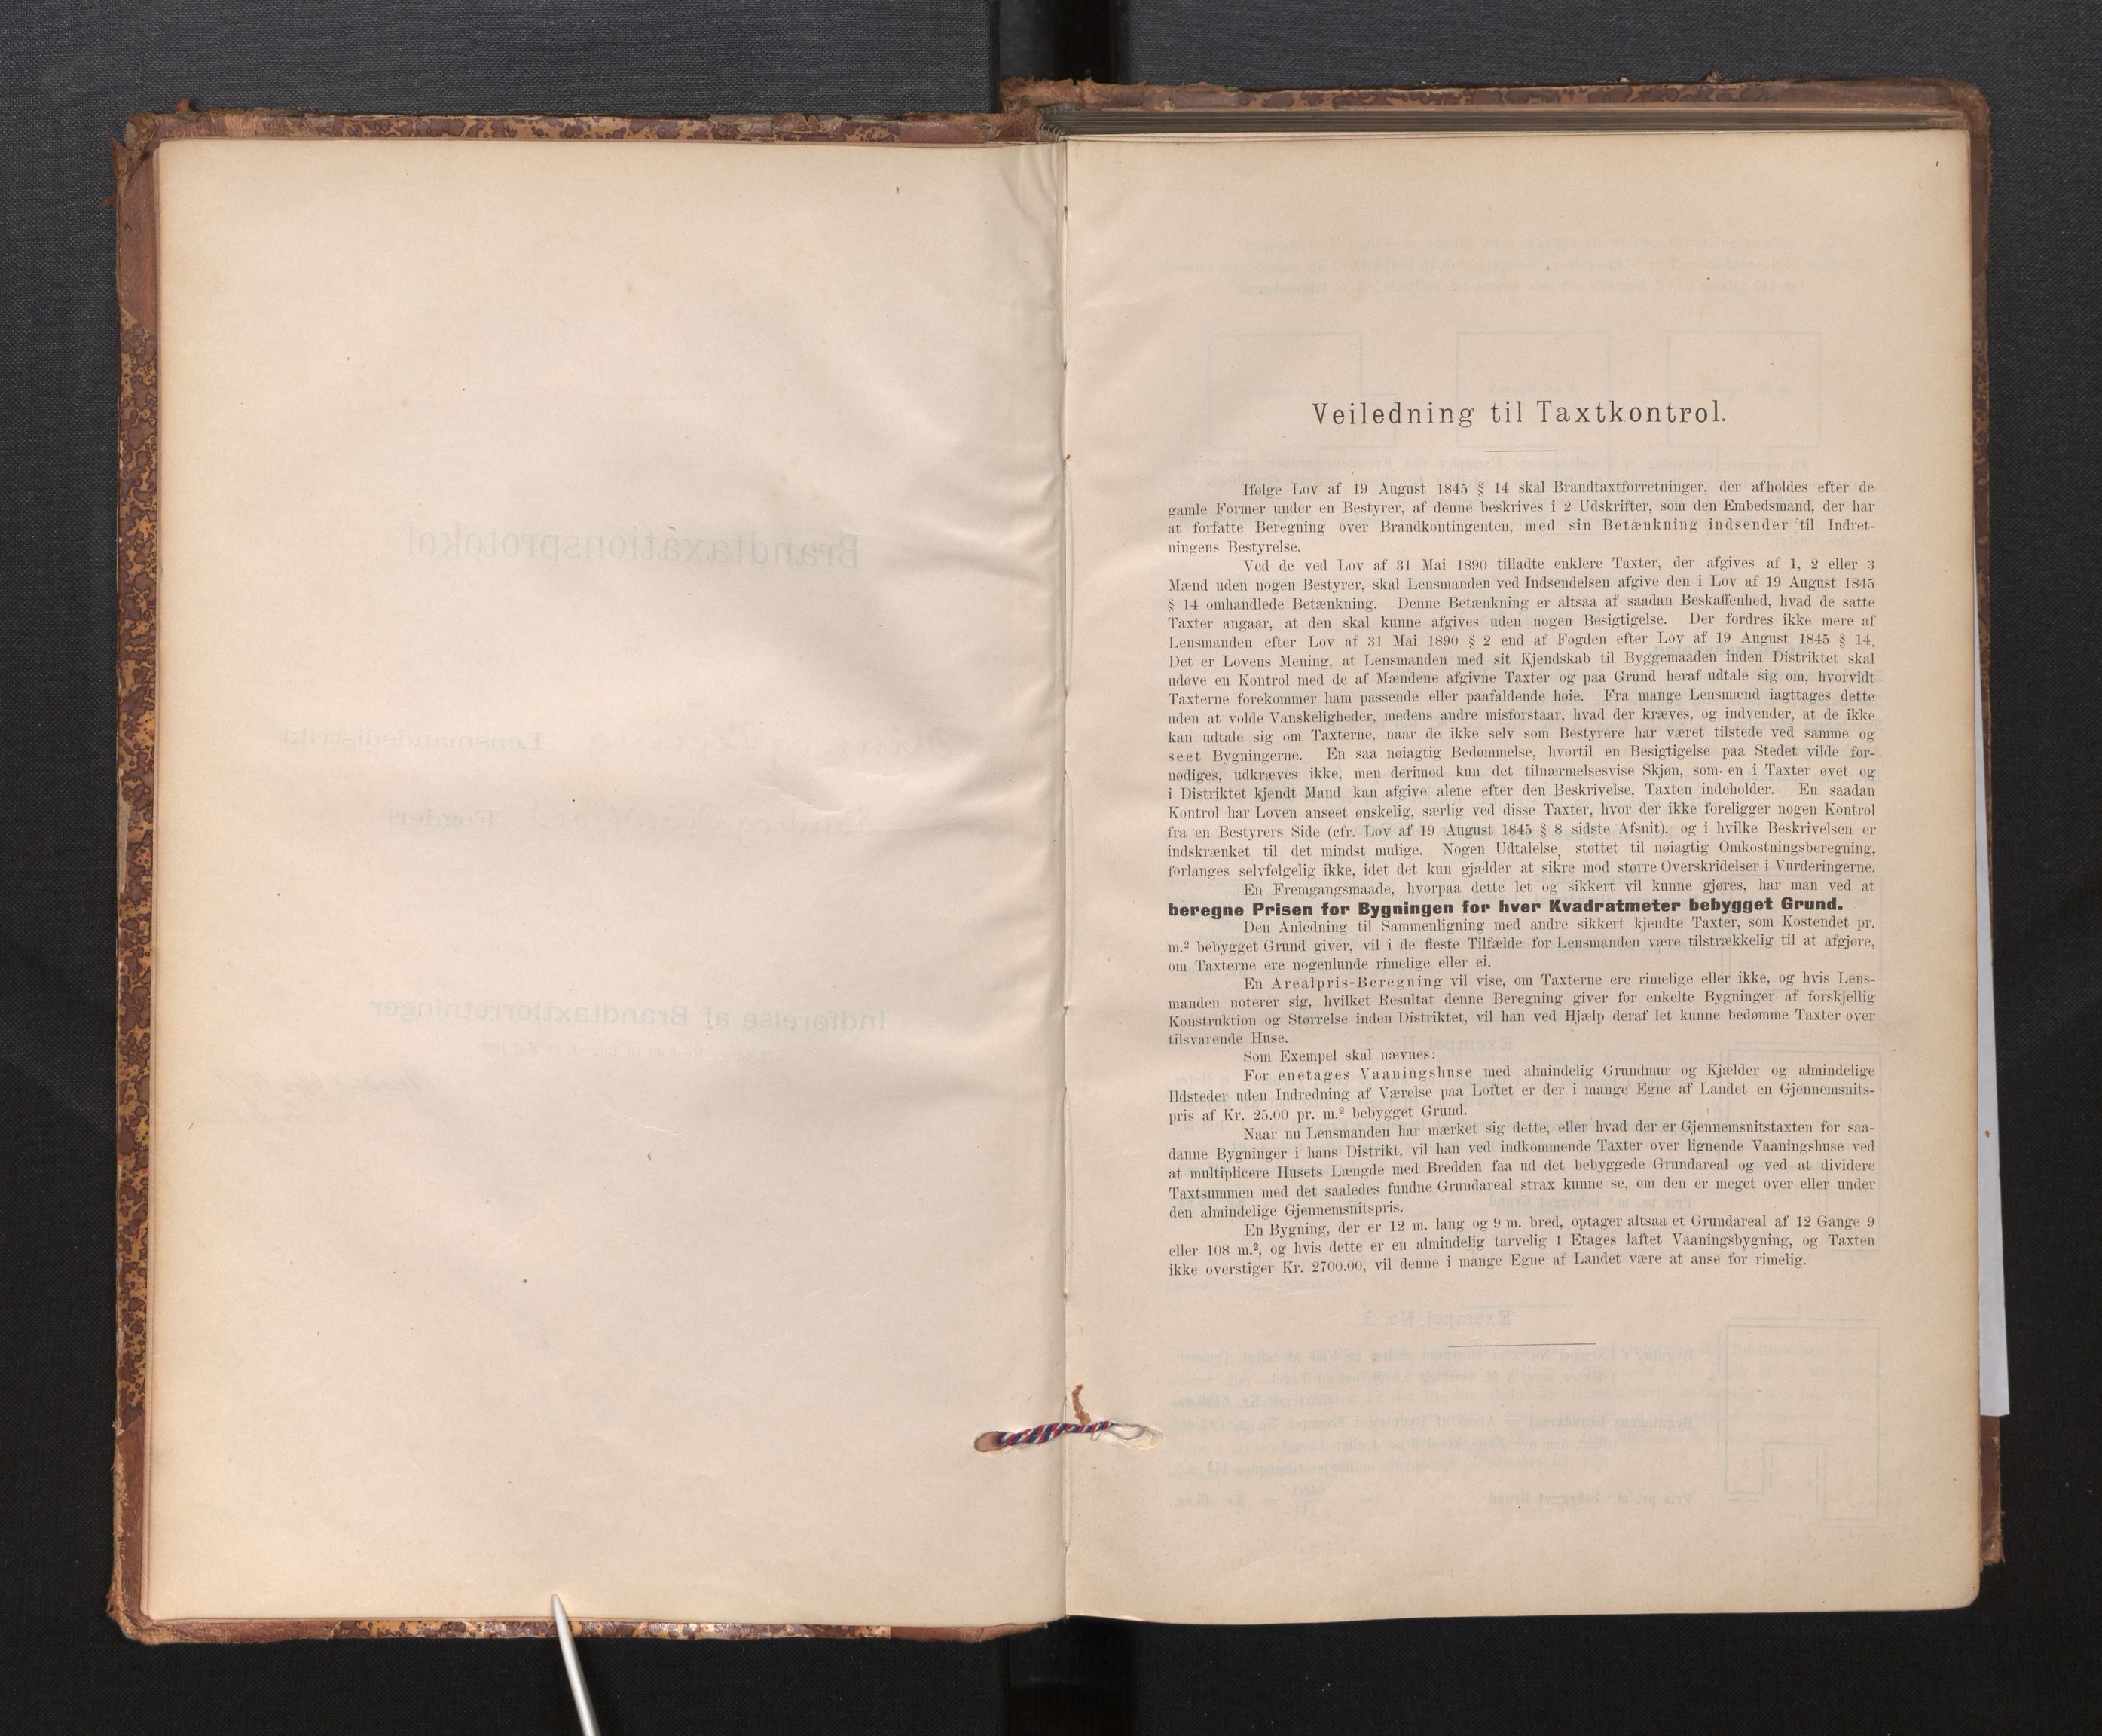 Lensmannen i Kinn, SAB/A-28801/0012/L0004f: Branntakstprotokoll, skjematakst, 1894-1911